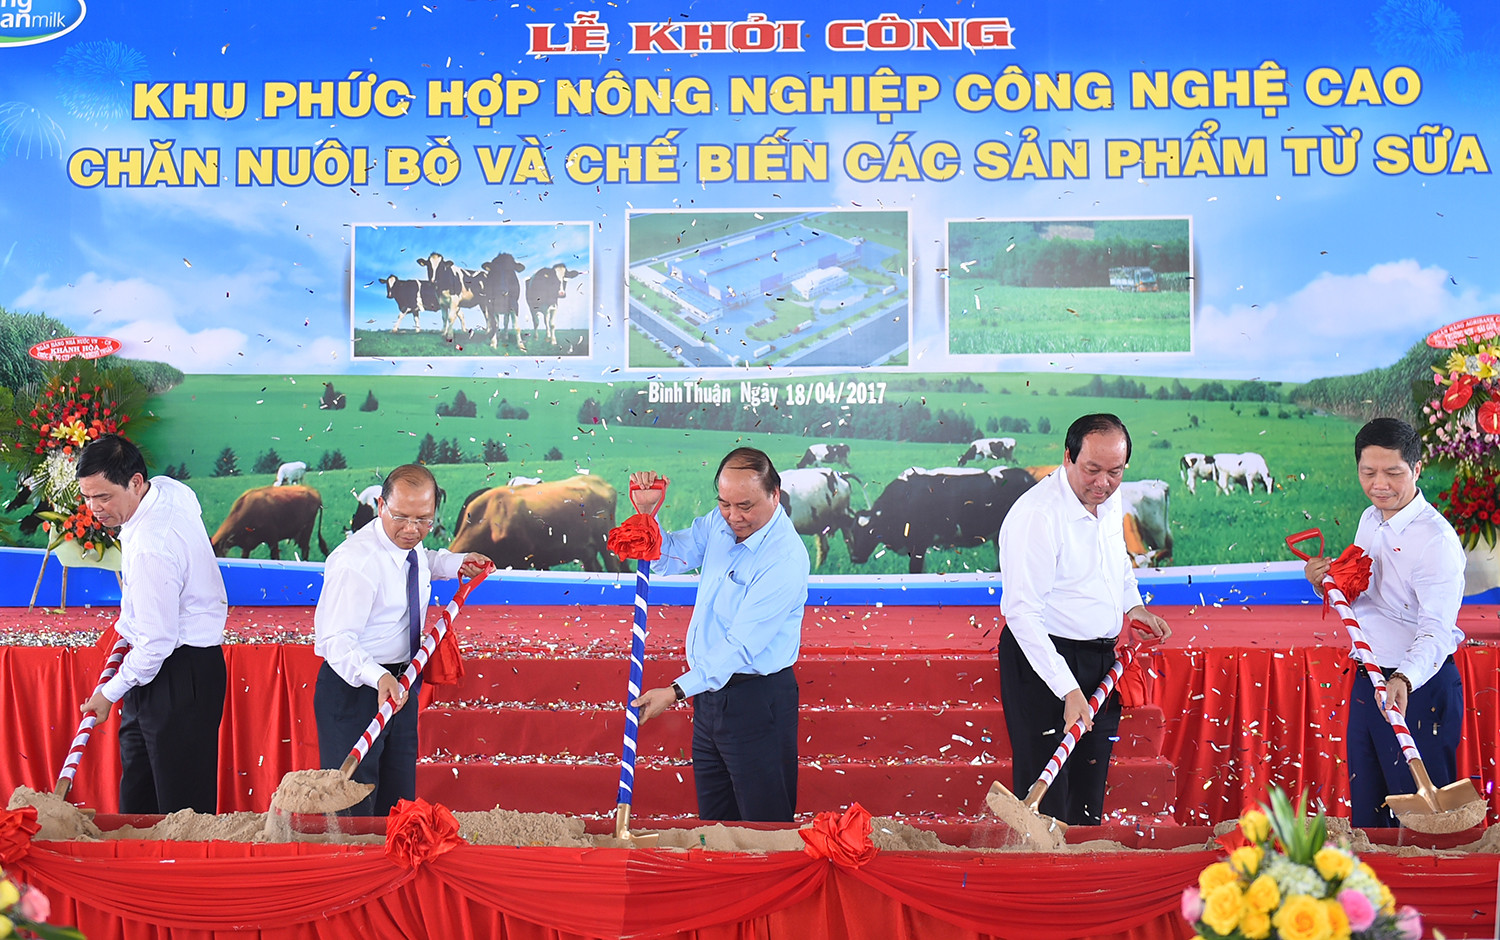 Thủ tướng Nguyễn Xuân Phúc: Bình Thuận phải vươn lên bằng '3 chân kiềng'